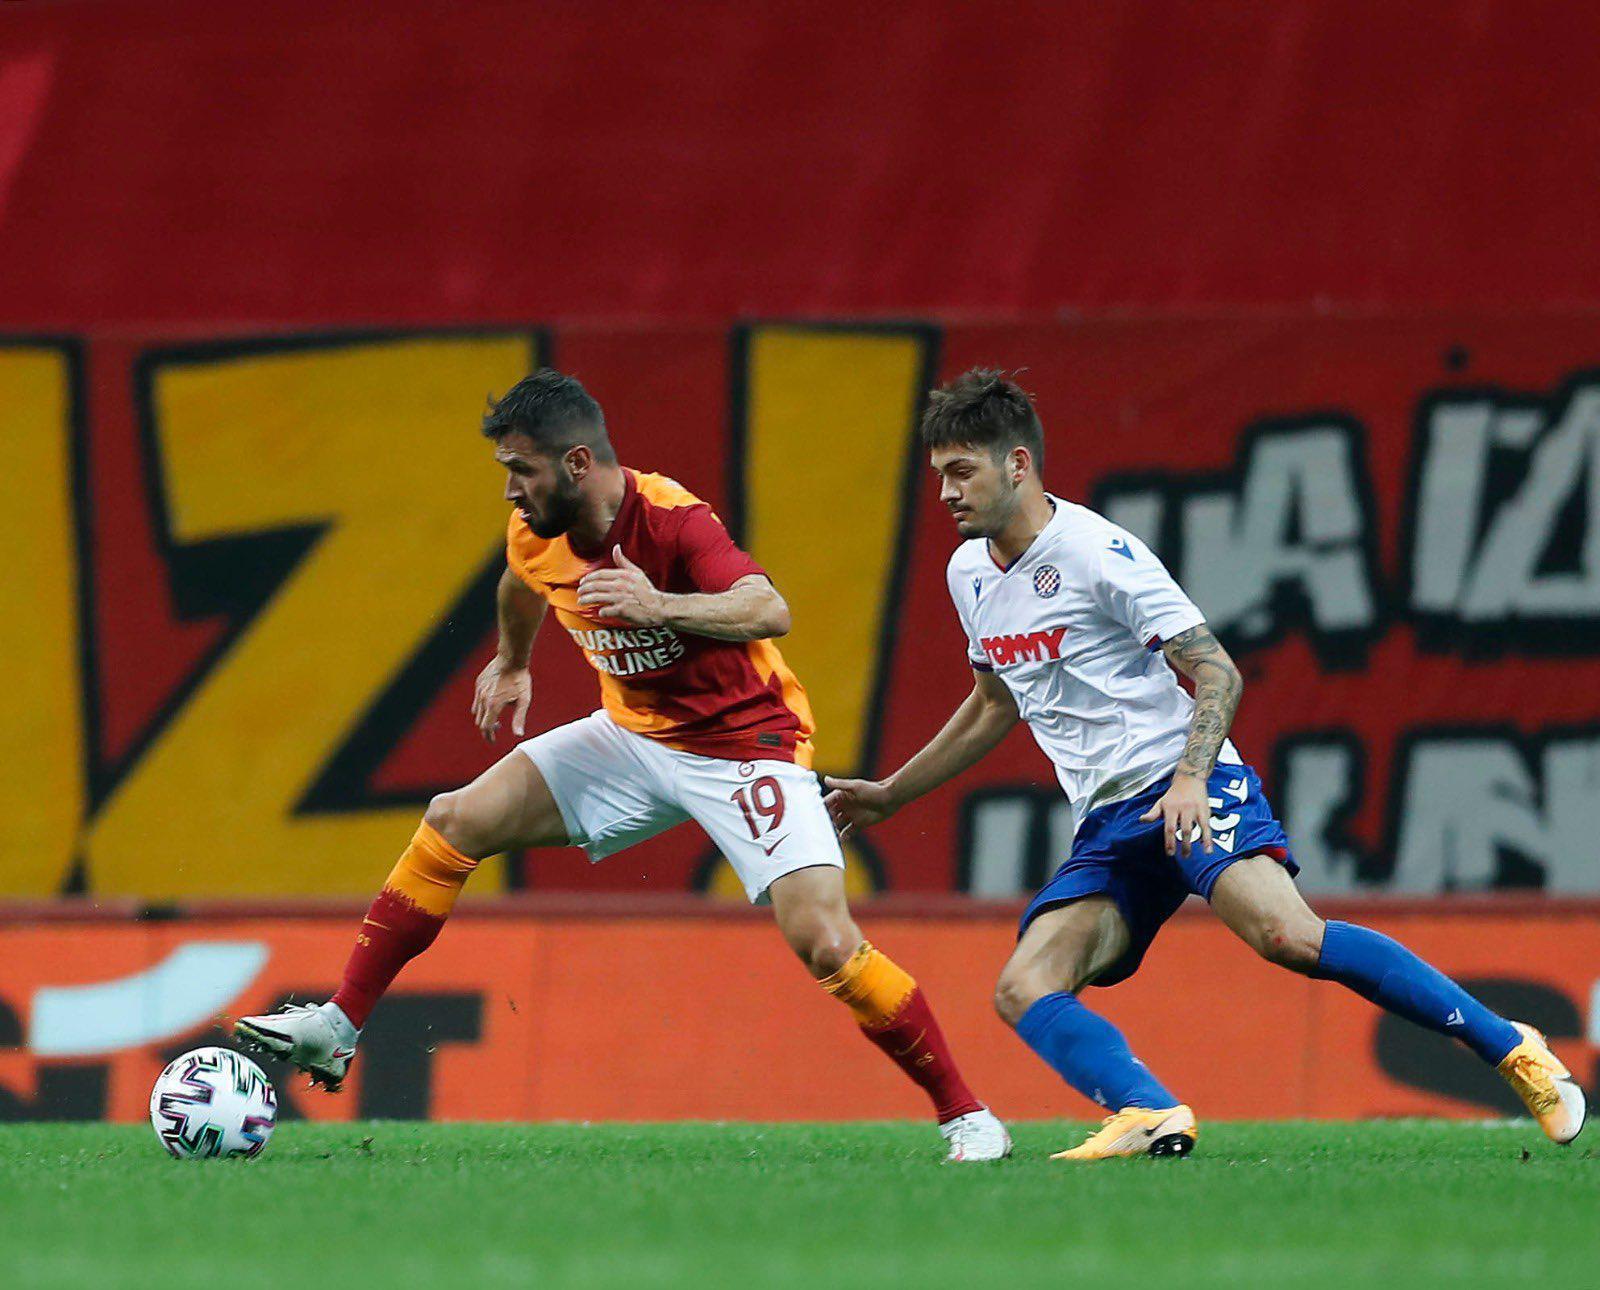 (ÖZET İZLE) Galatasaray - Hajduk Split maç sonucu: 2-0